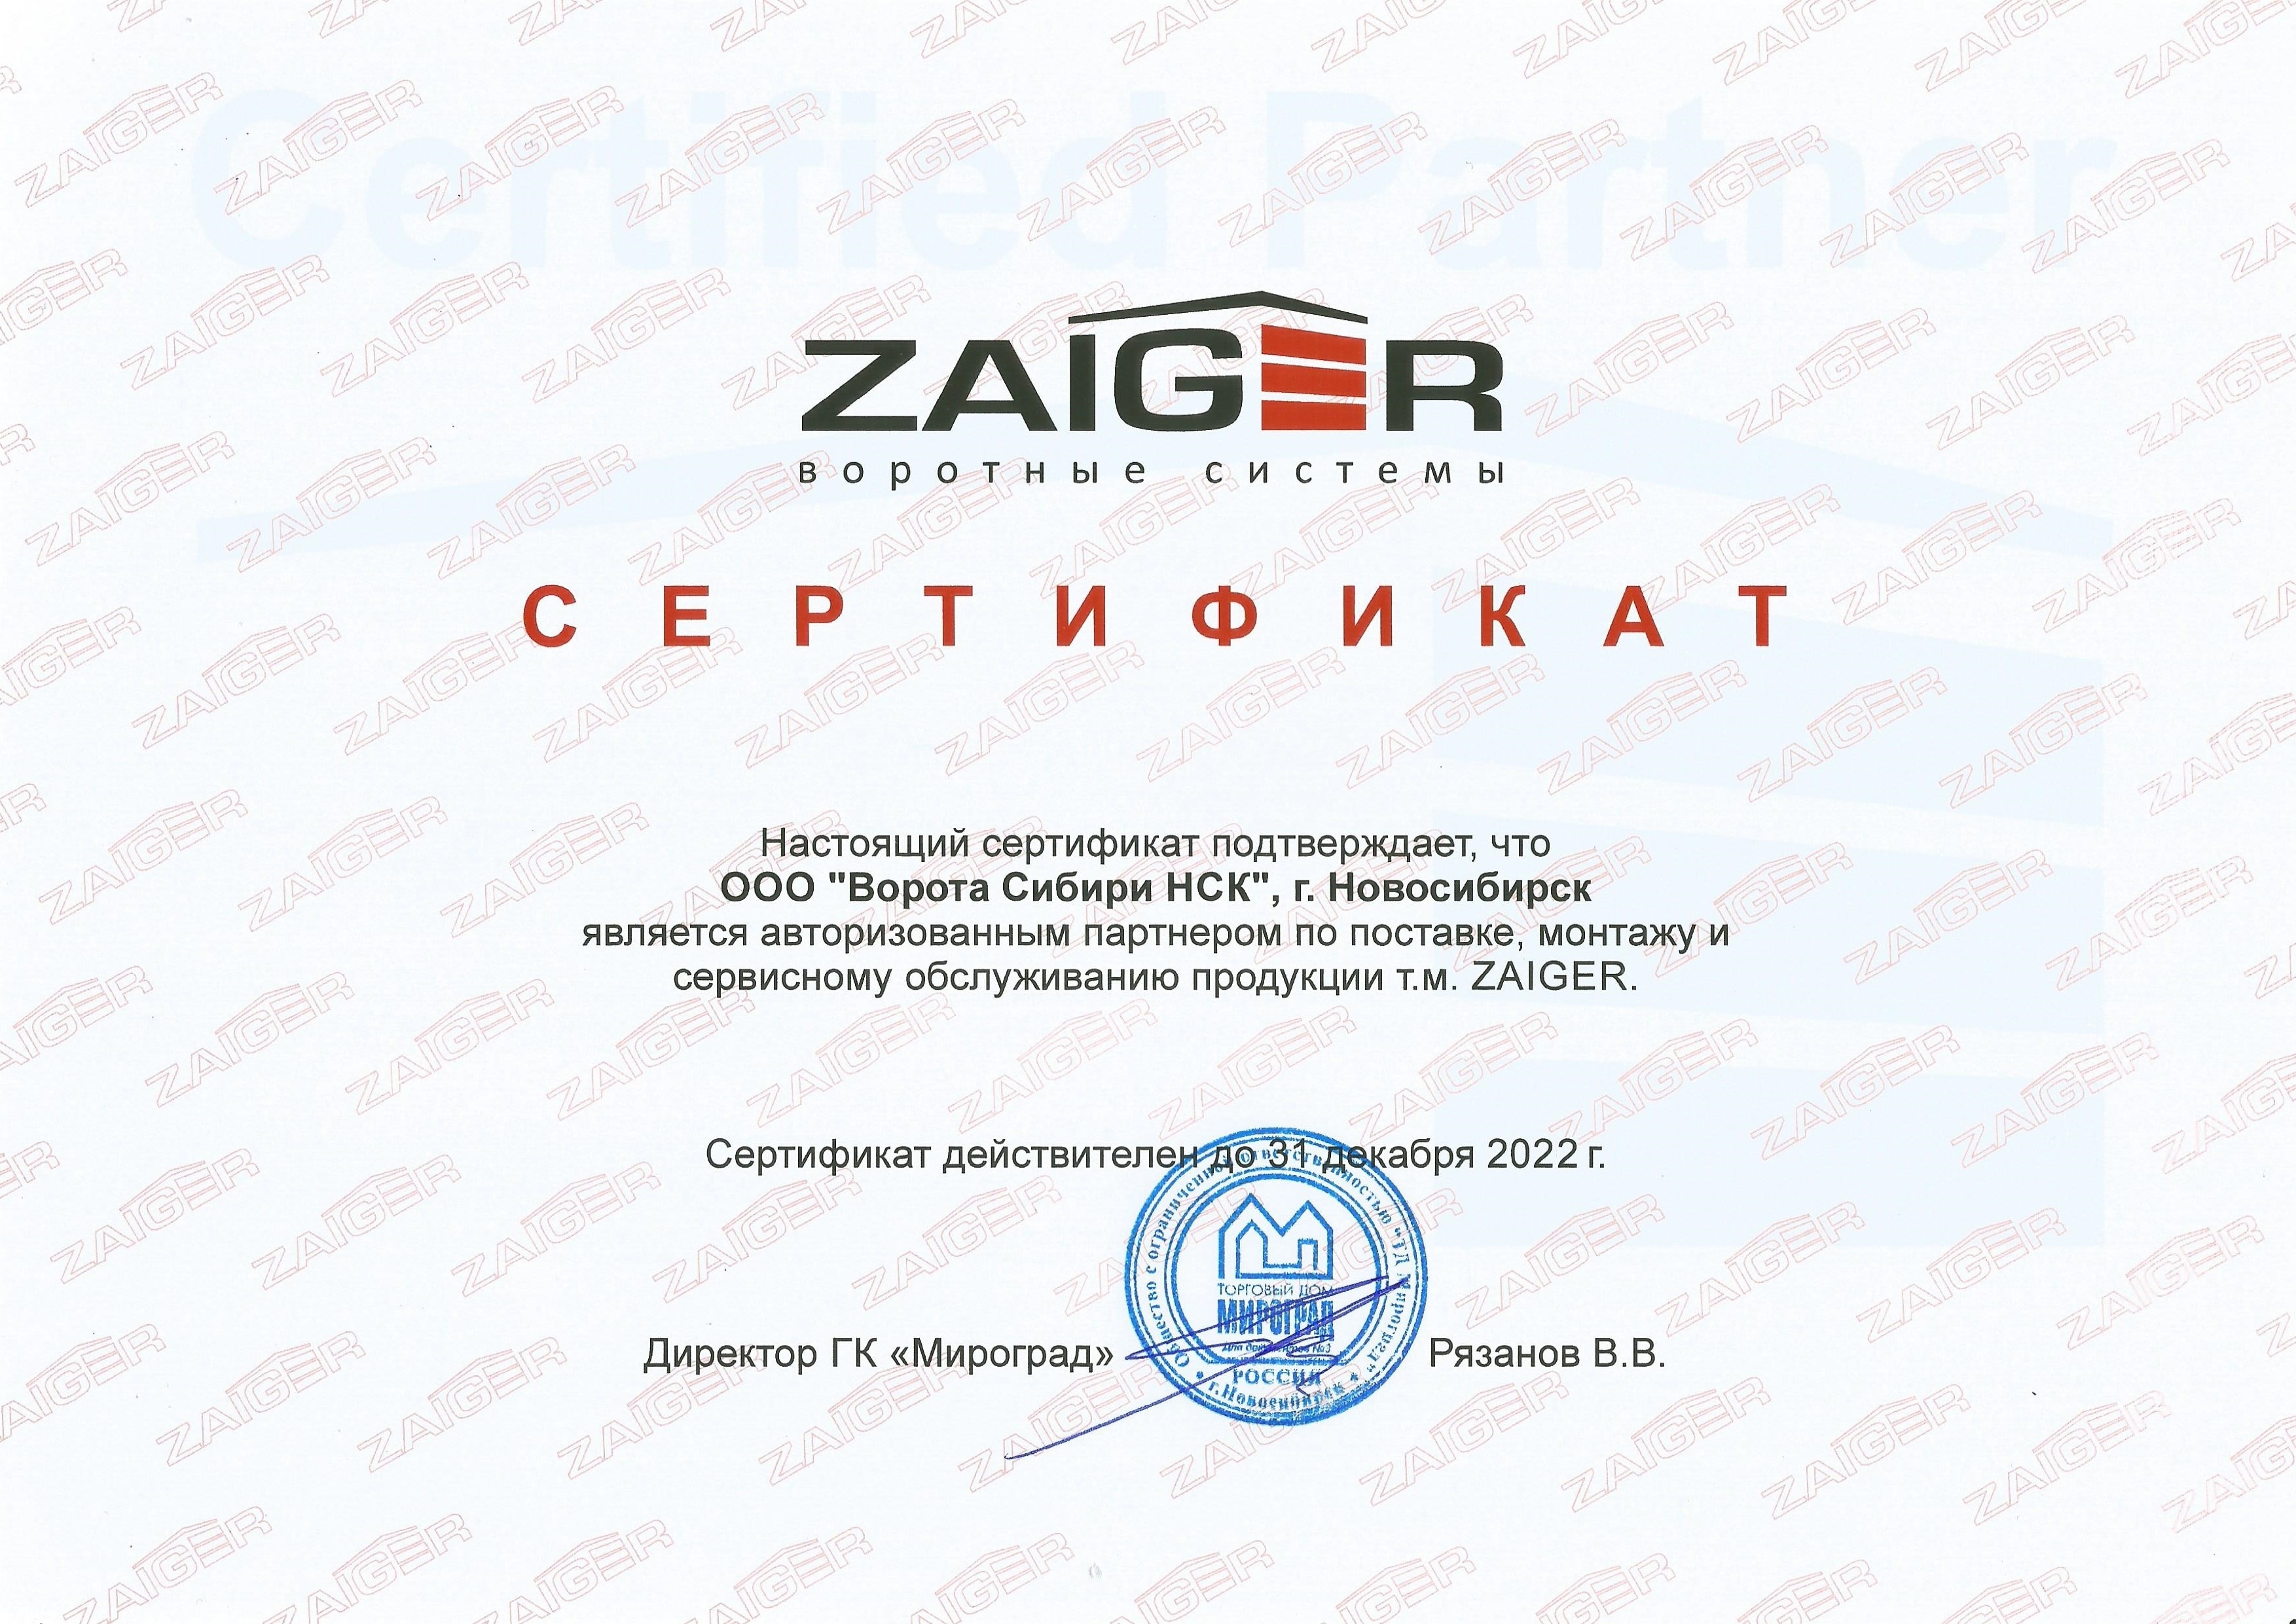 Сертификат авторизованного партнера т.м. ZAIGER